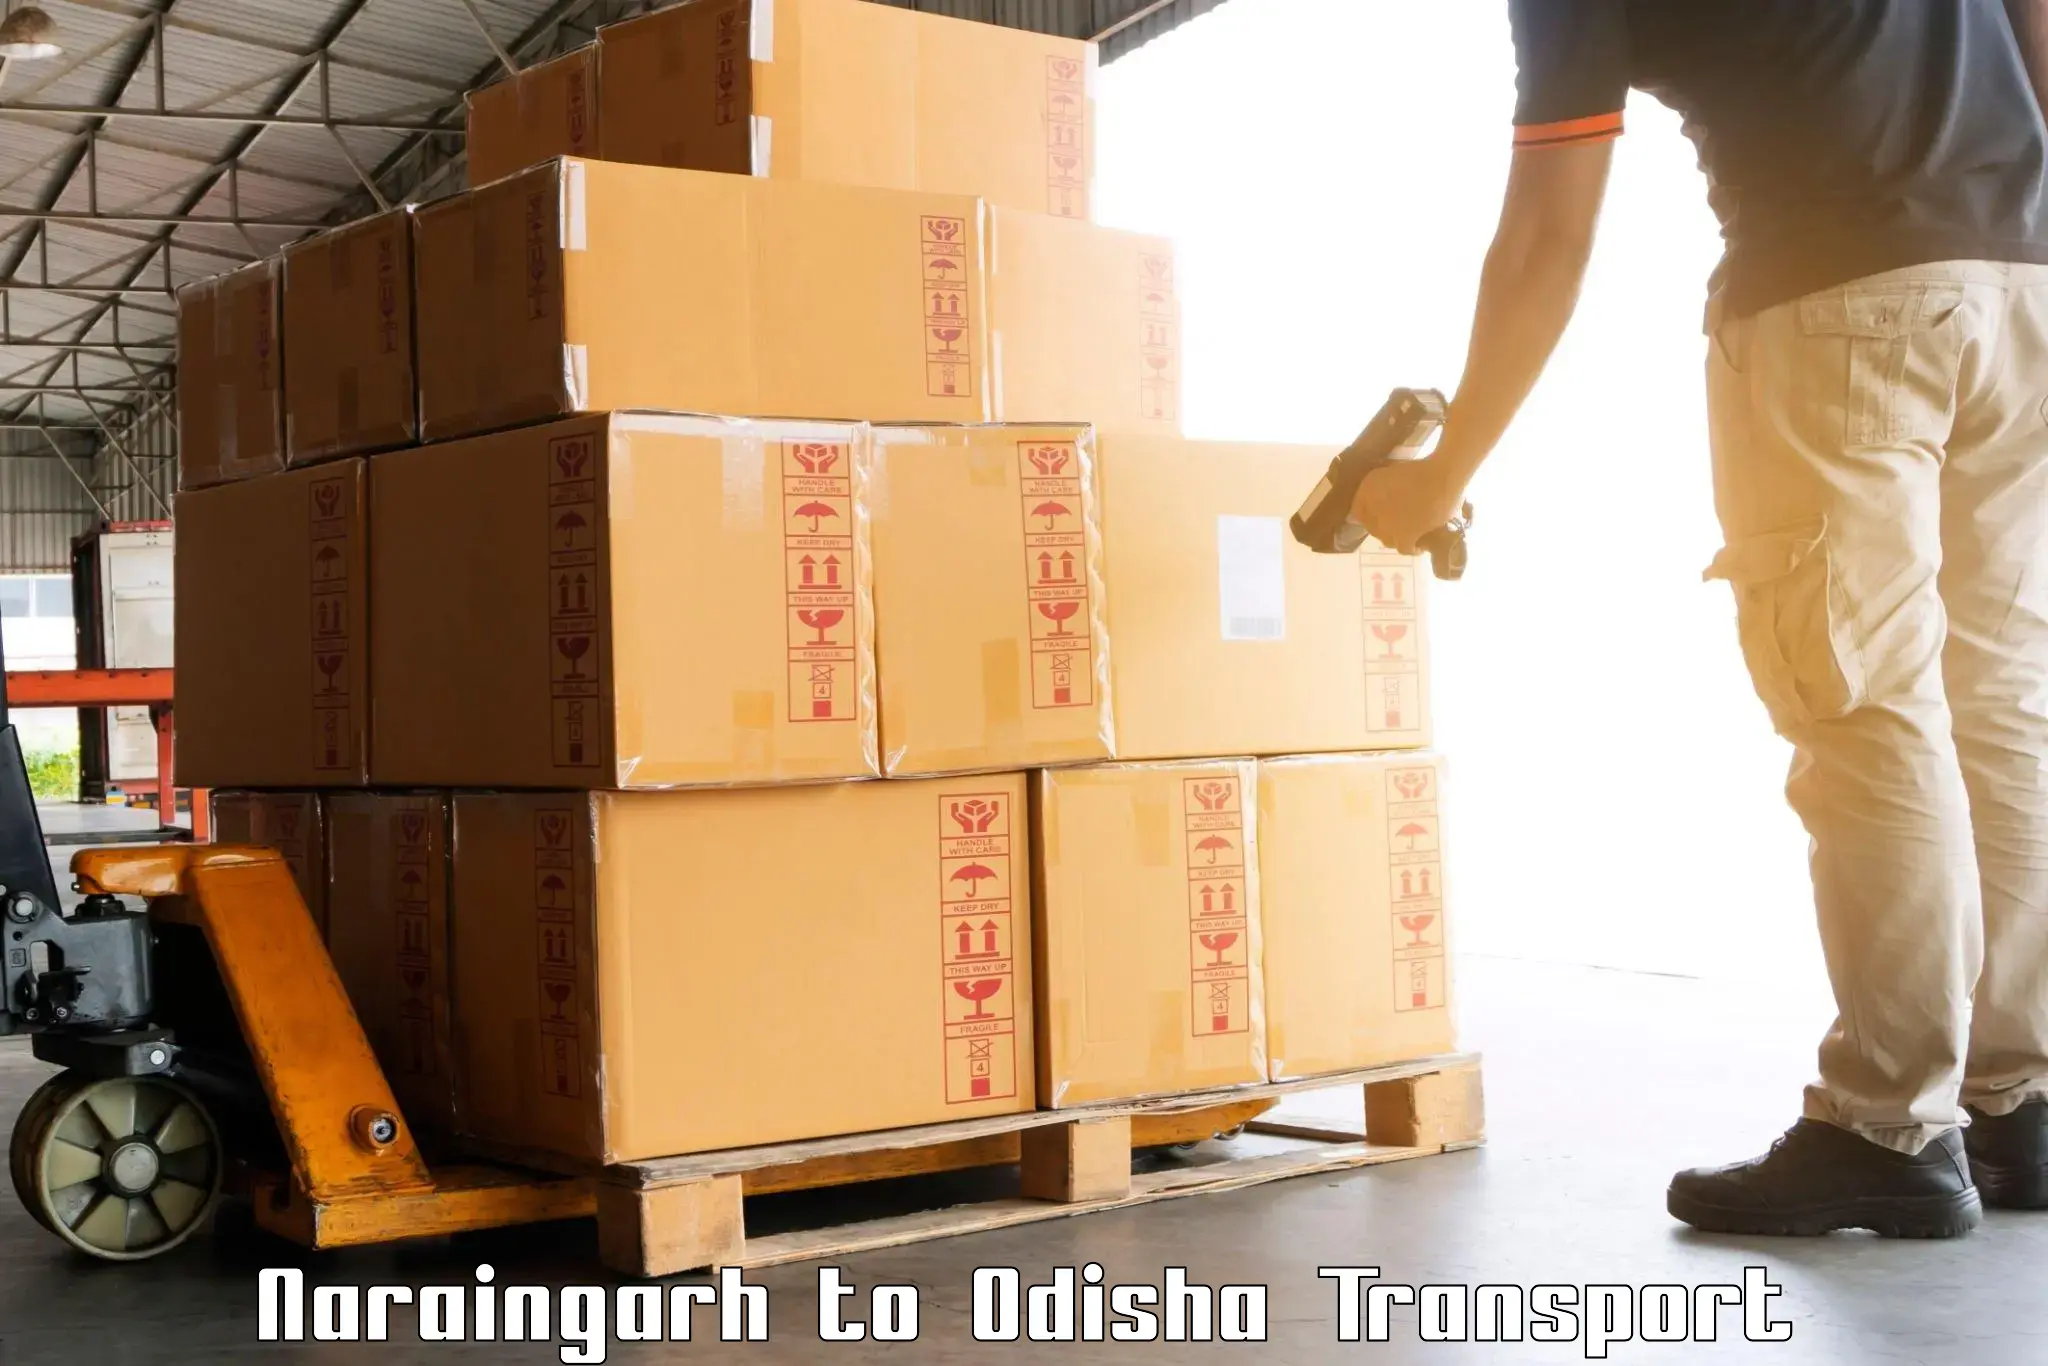 Shipping partner Naraingarh to Babujang